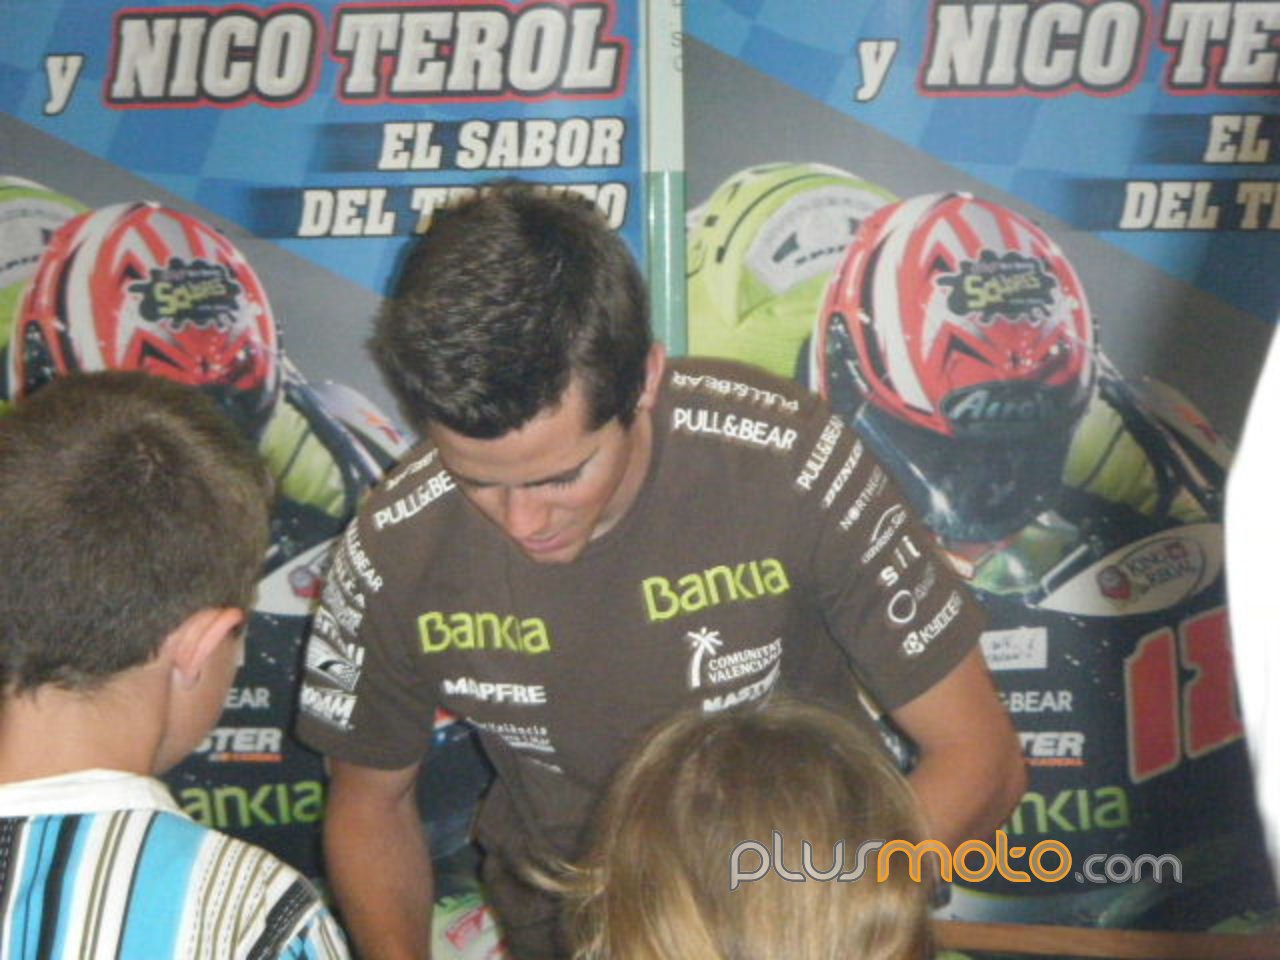 Nico Terol en Badalona firma autografos